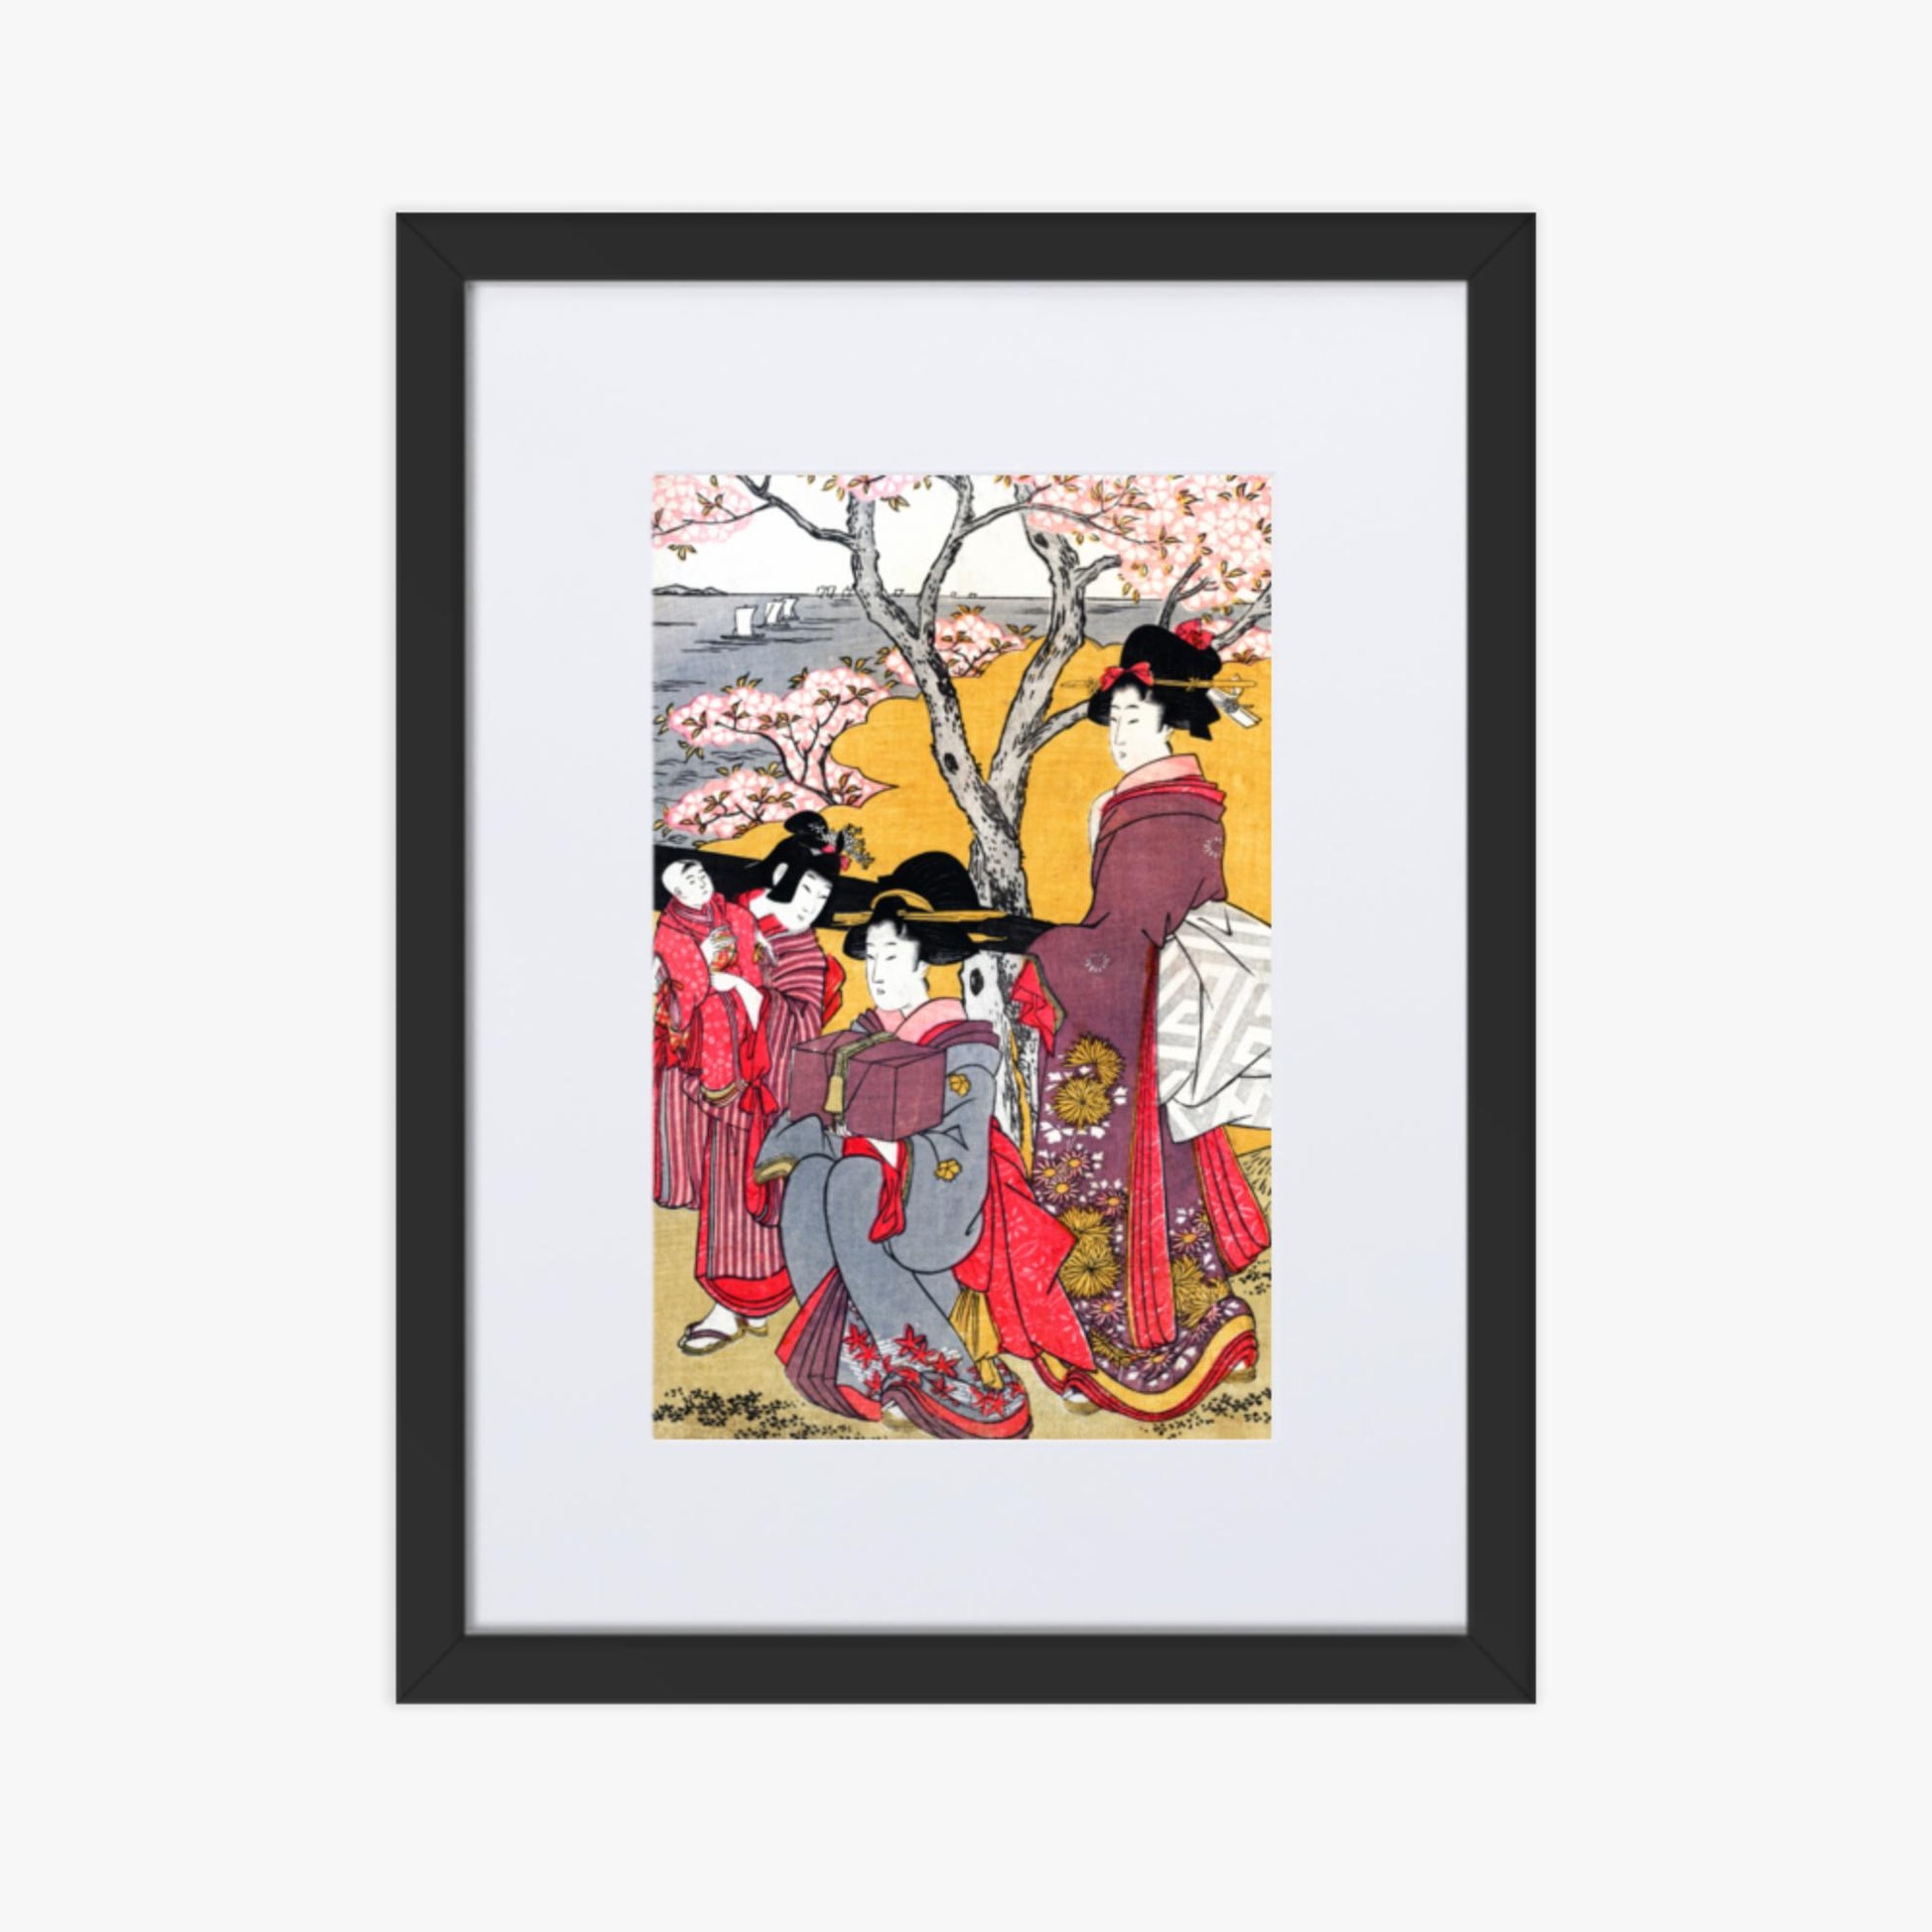 Kitagawa Utamaro - Cherry-viewing at Gotenyama 30x40 cm Poster With Black Frame